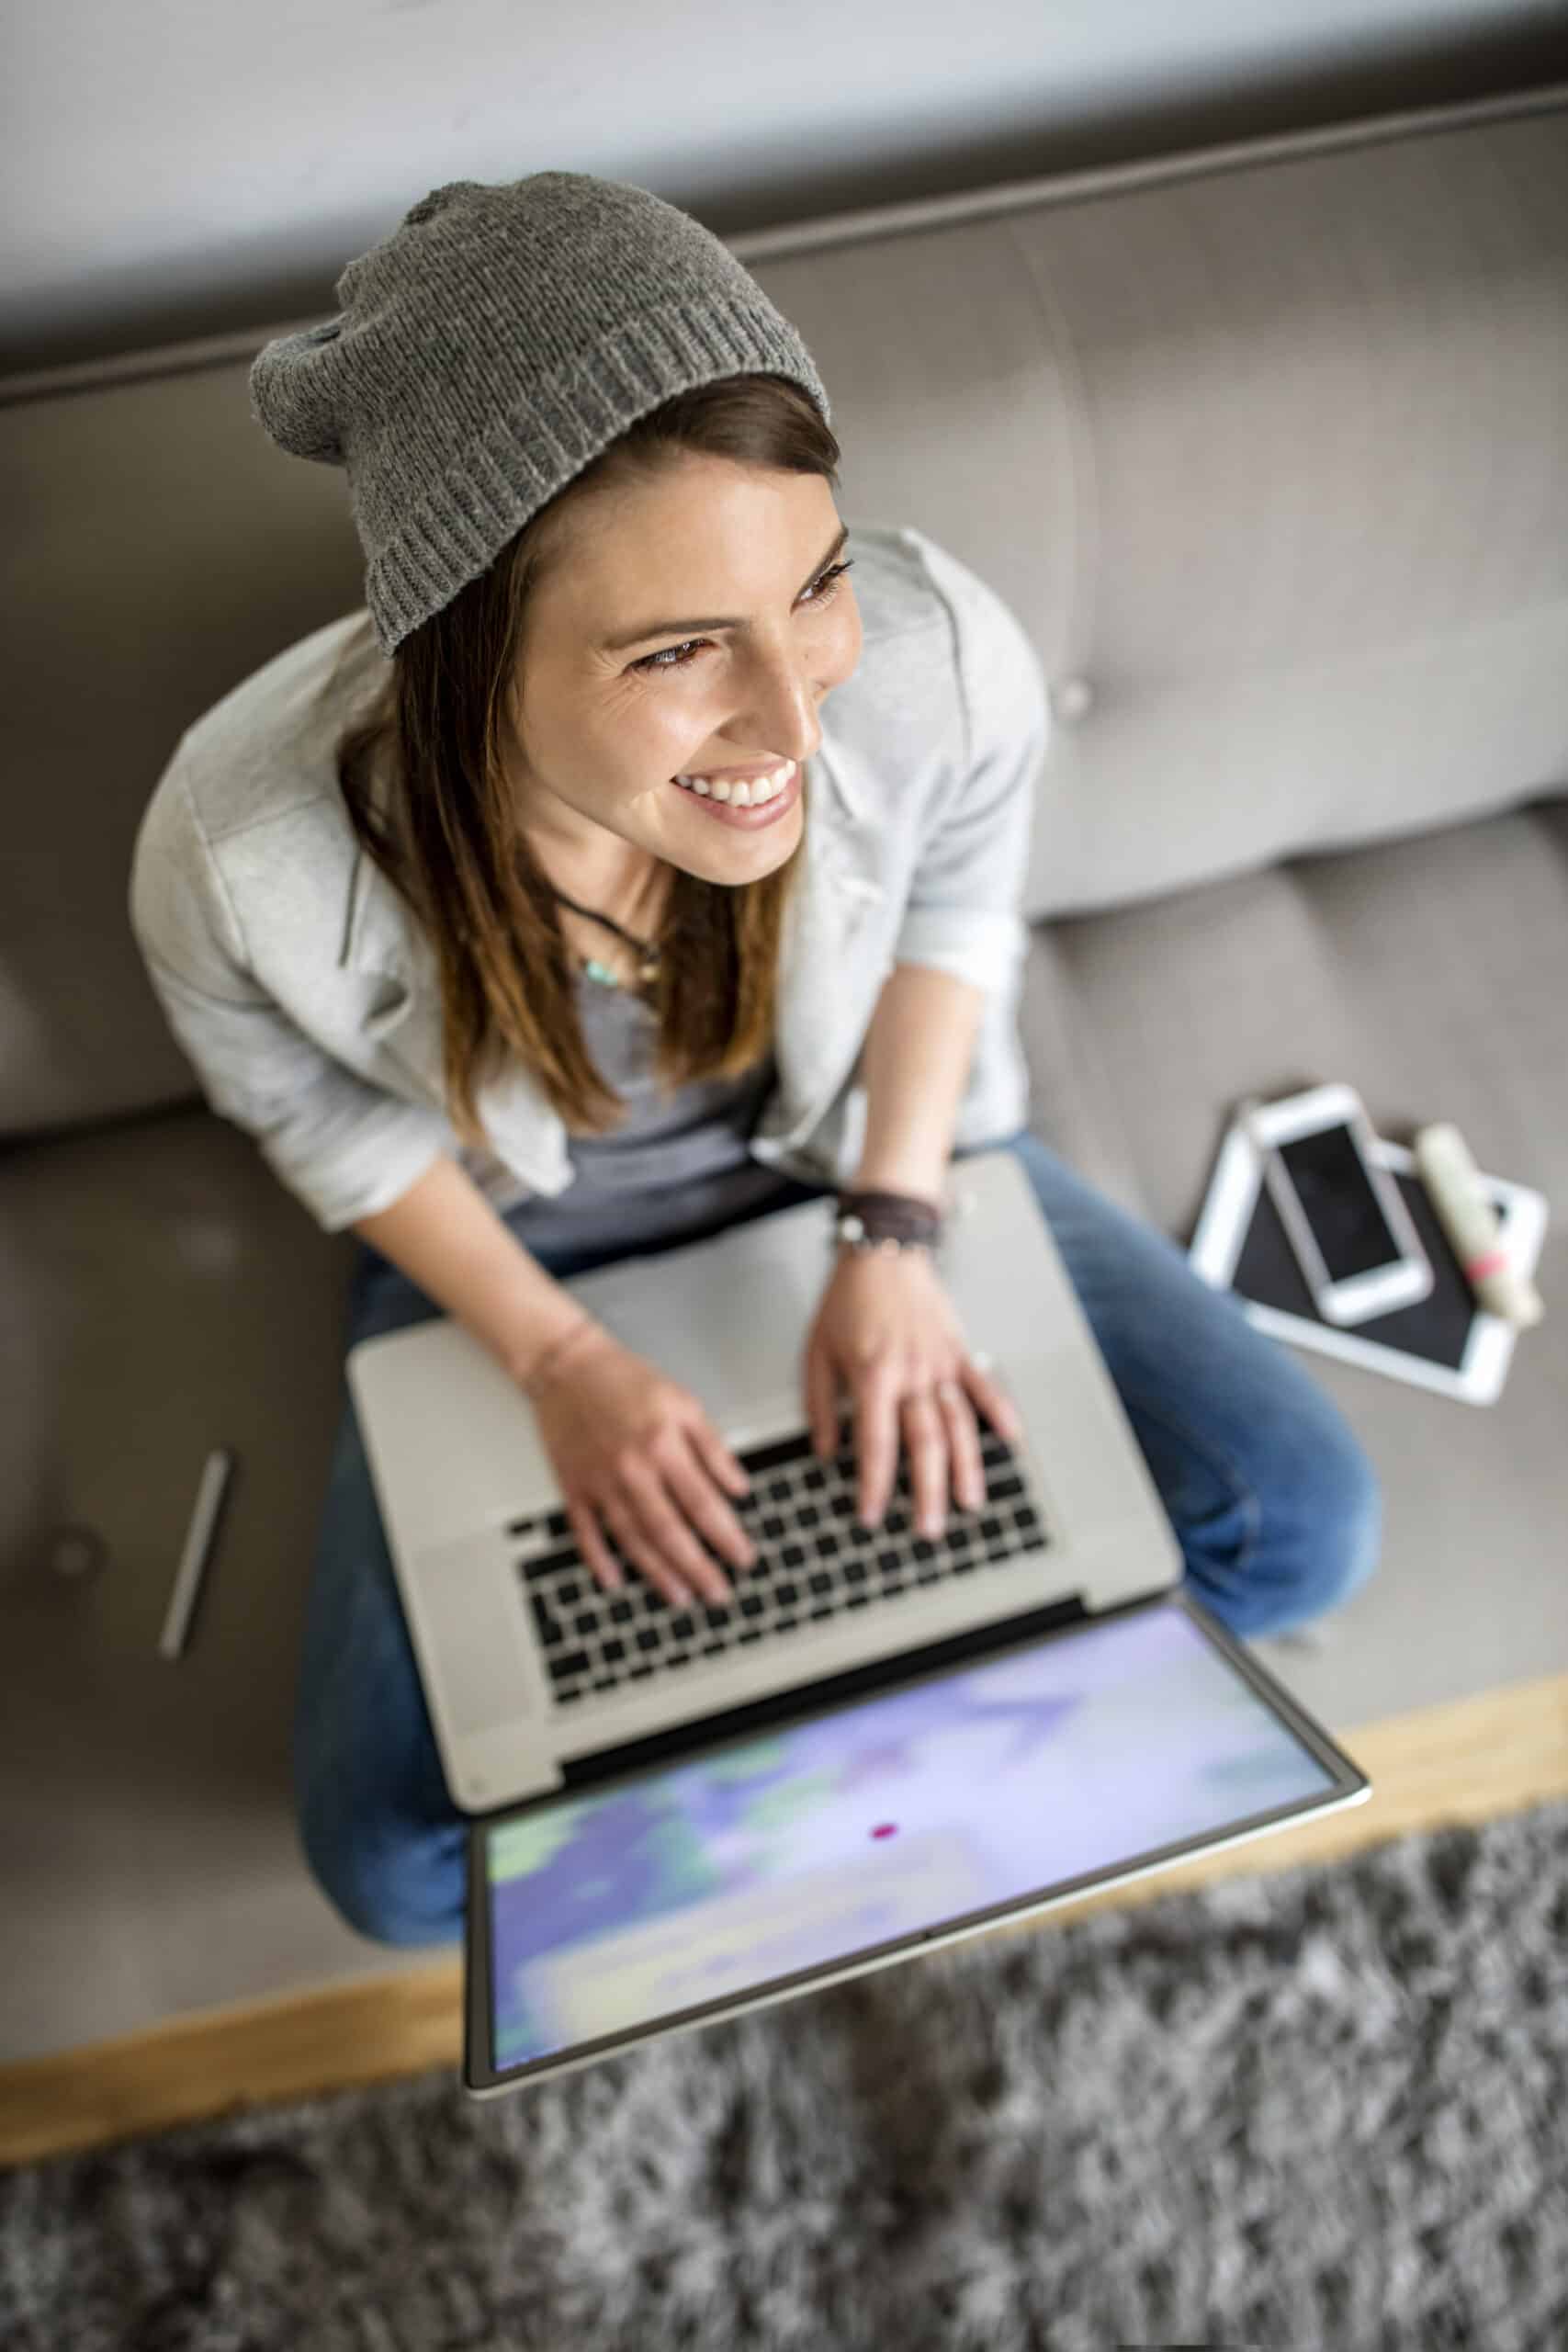 Eine junge Frau sitzt auf einem grauen Teppich und lächelt, während sie einen Laptop benutzt. Sie trägt eine hellgraue Mütze und Jacke. Neben ihr liegen ein Smartphone, ein Tablet und eine Smartwatch. © Fotografie Tomas Rodriguez